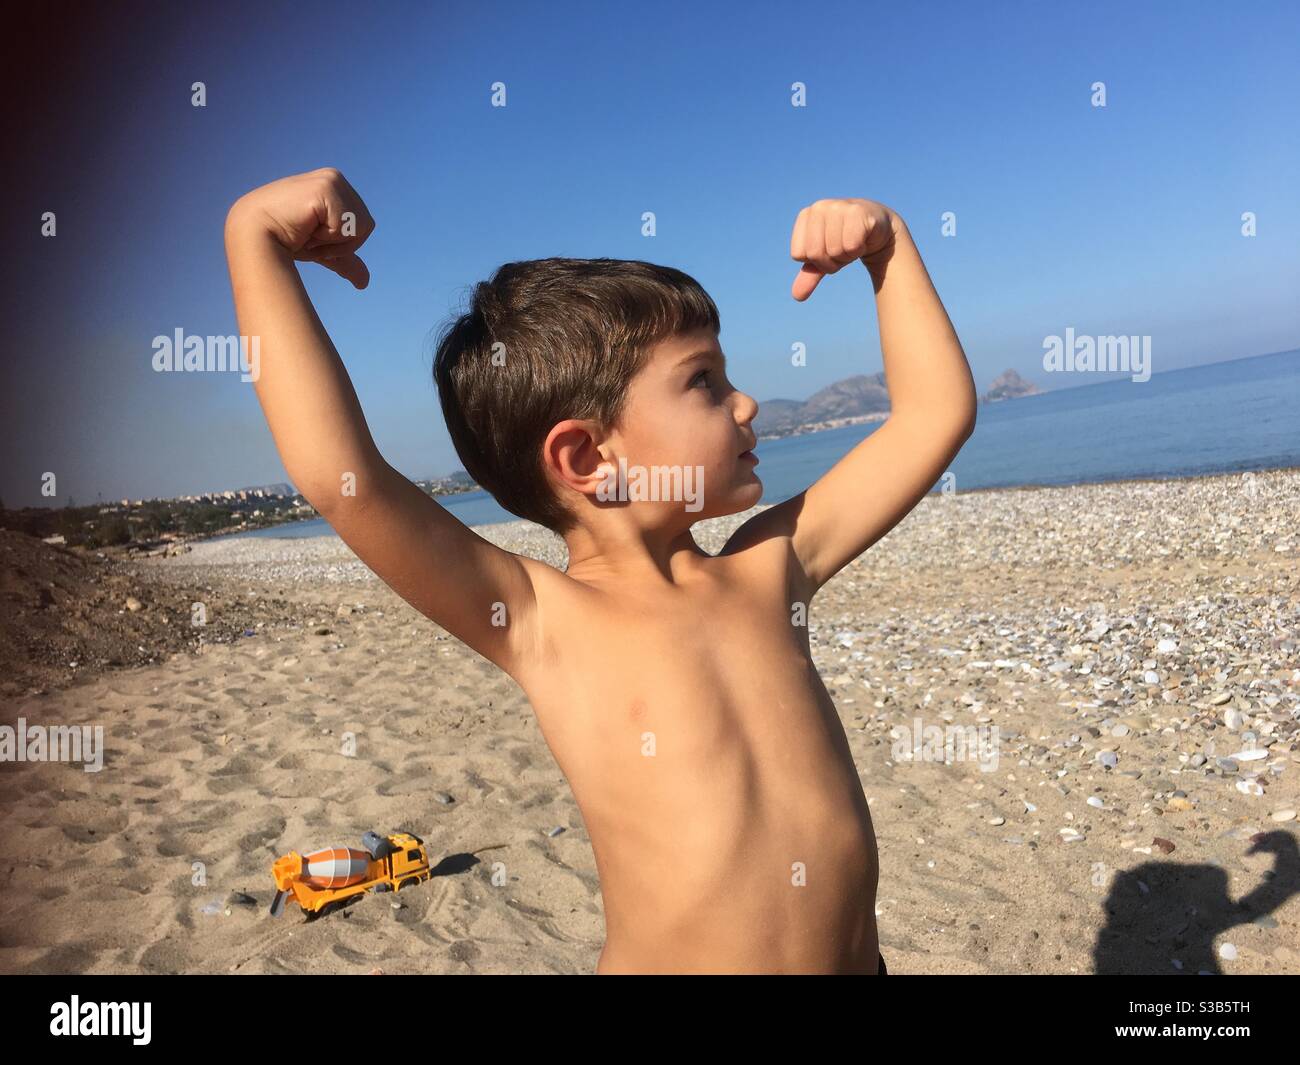 Bambino che mostra i muscoli in spiaggia Foto Stock